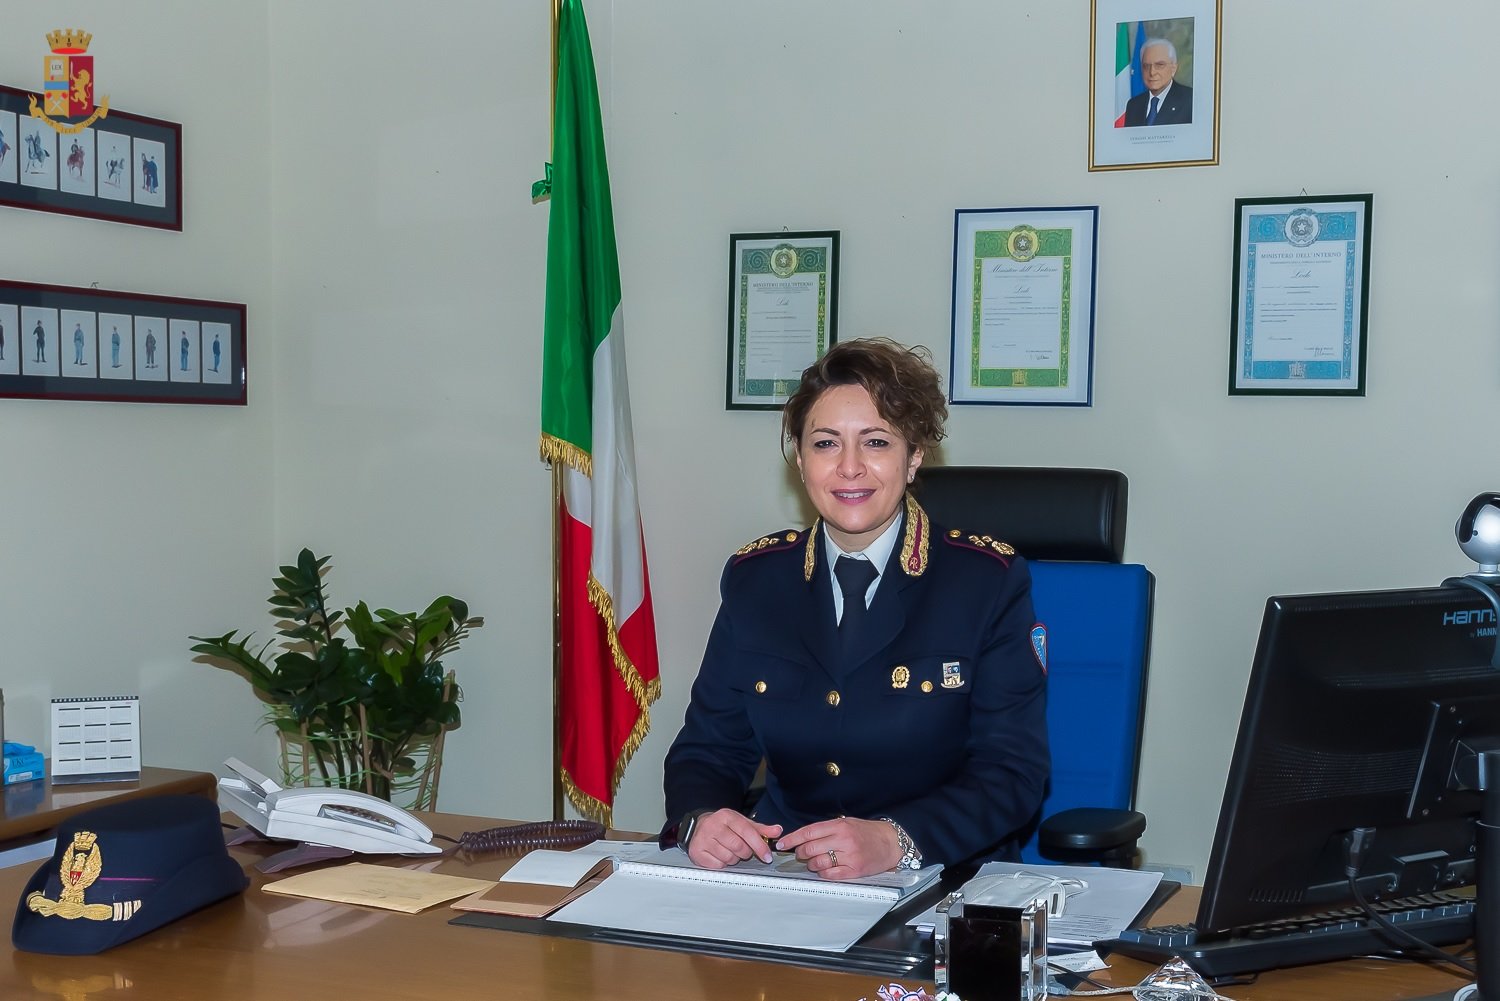 Polizia Stradale: Sara Mancinelli nuovo Dirigente. Lavorò a Genova dopo il crollo del Ponte Morandi